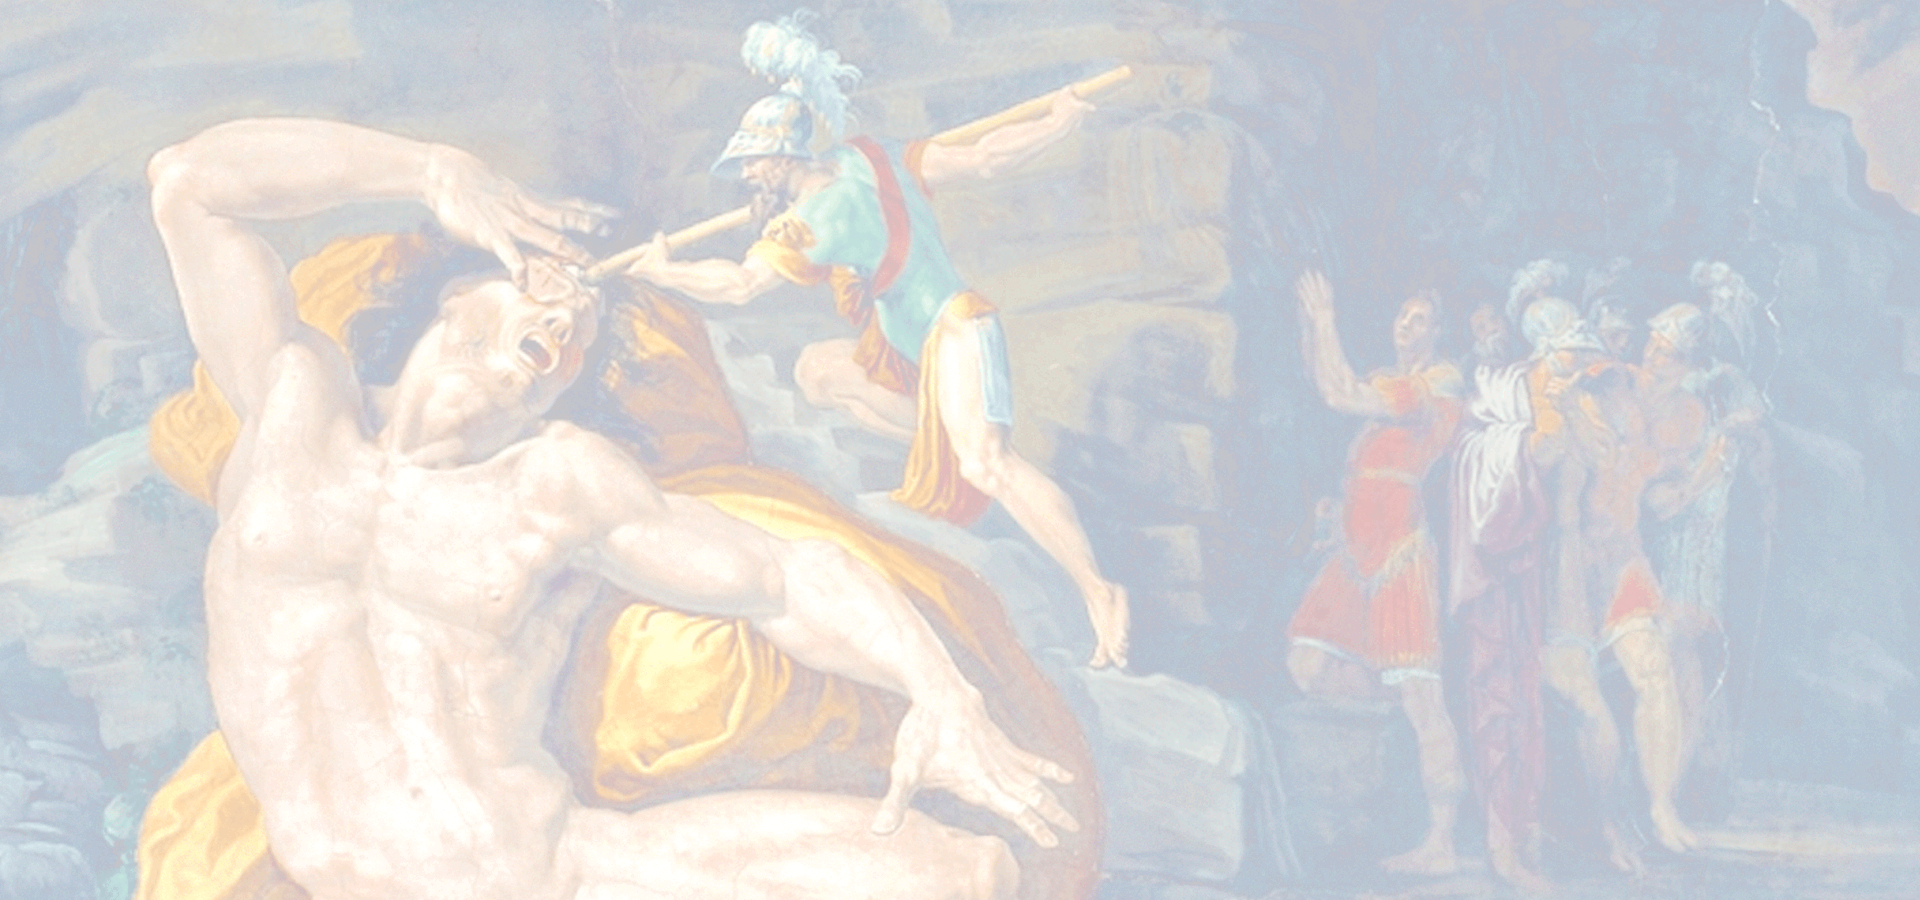 Polyphemus and Odysseus